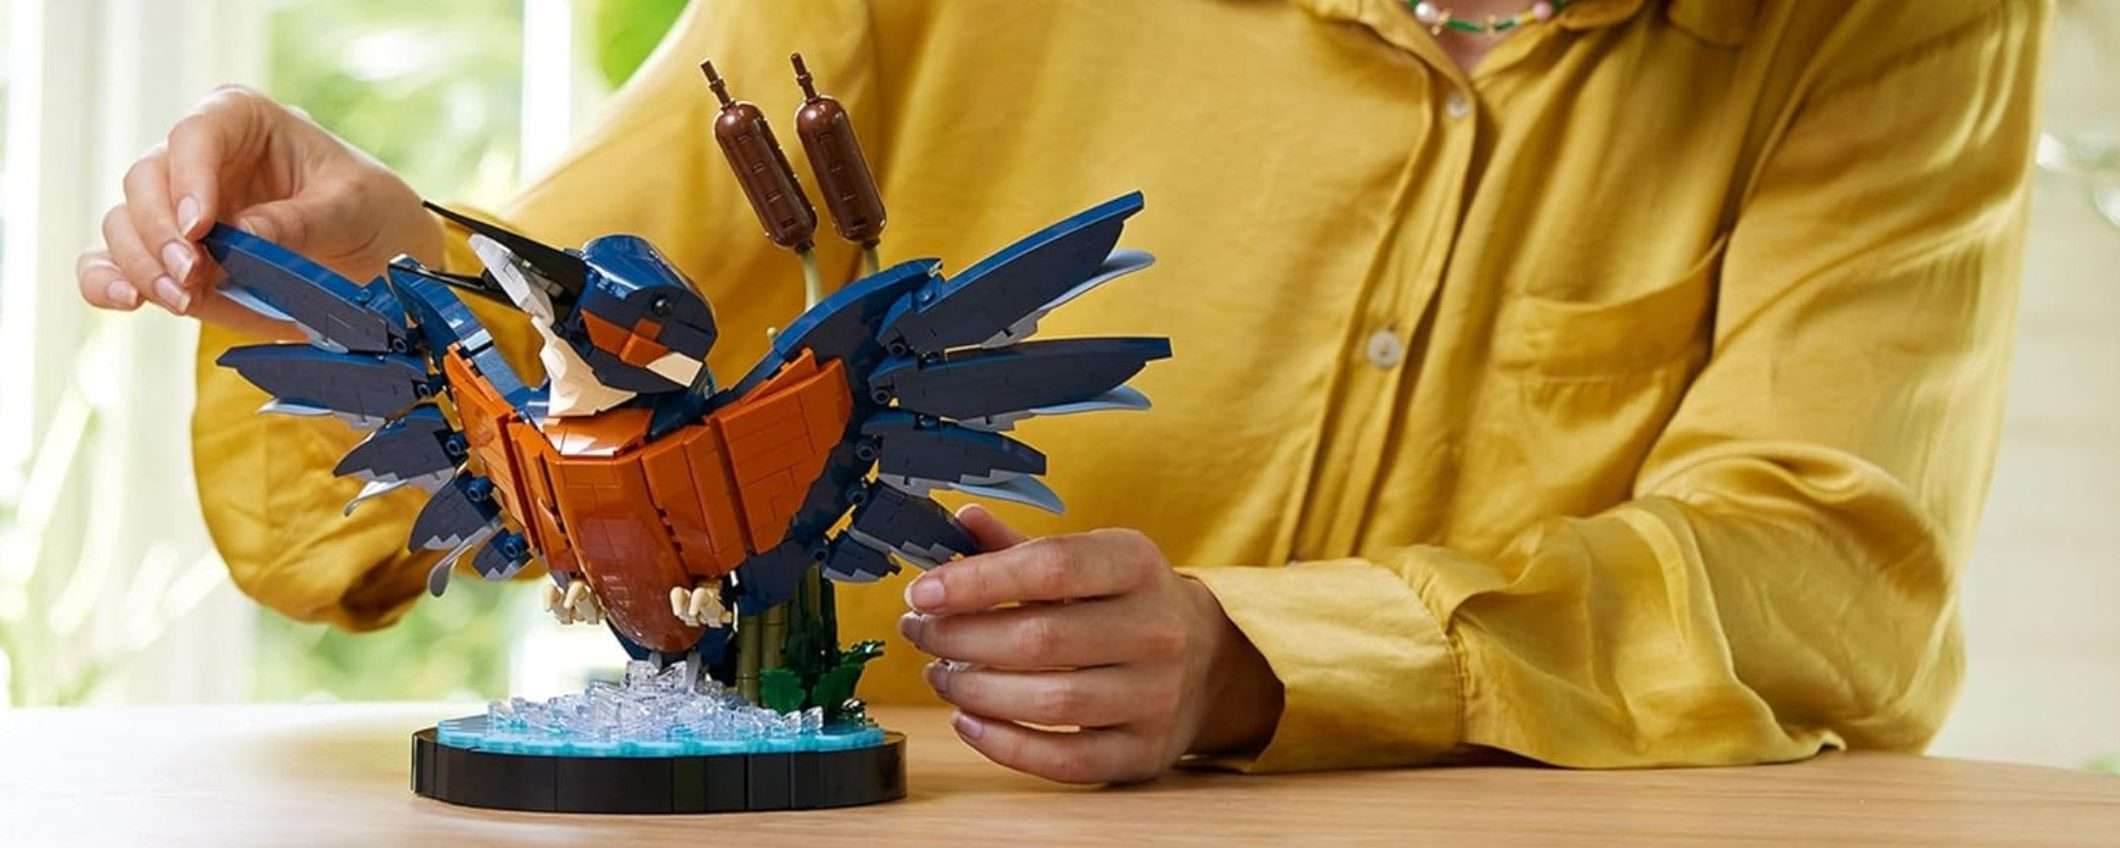 Il nuovo LEGO Martin Pescatore è in OFFERTA su Amazon (-20%)